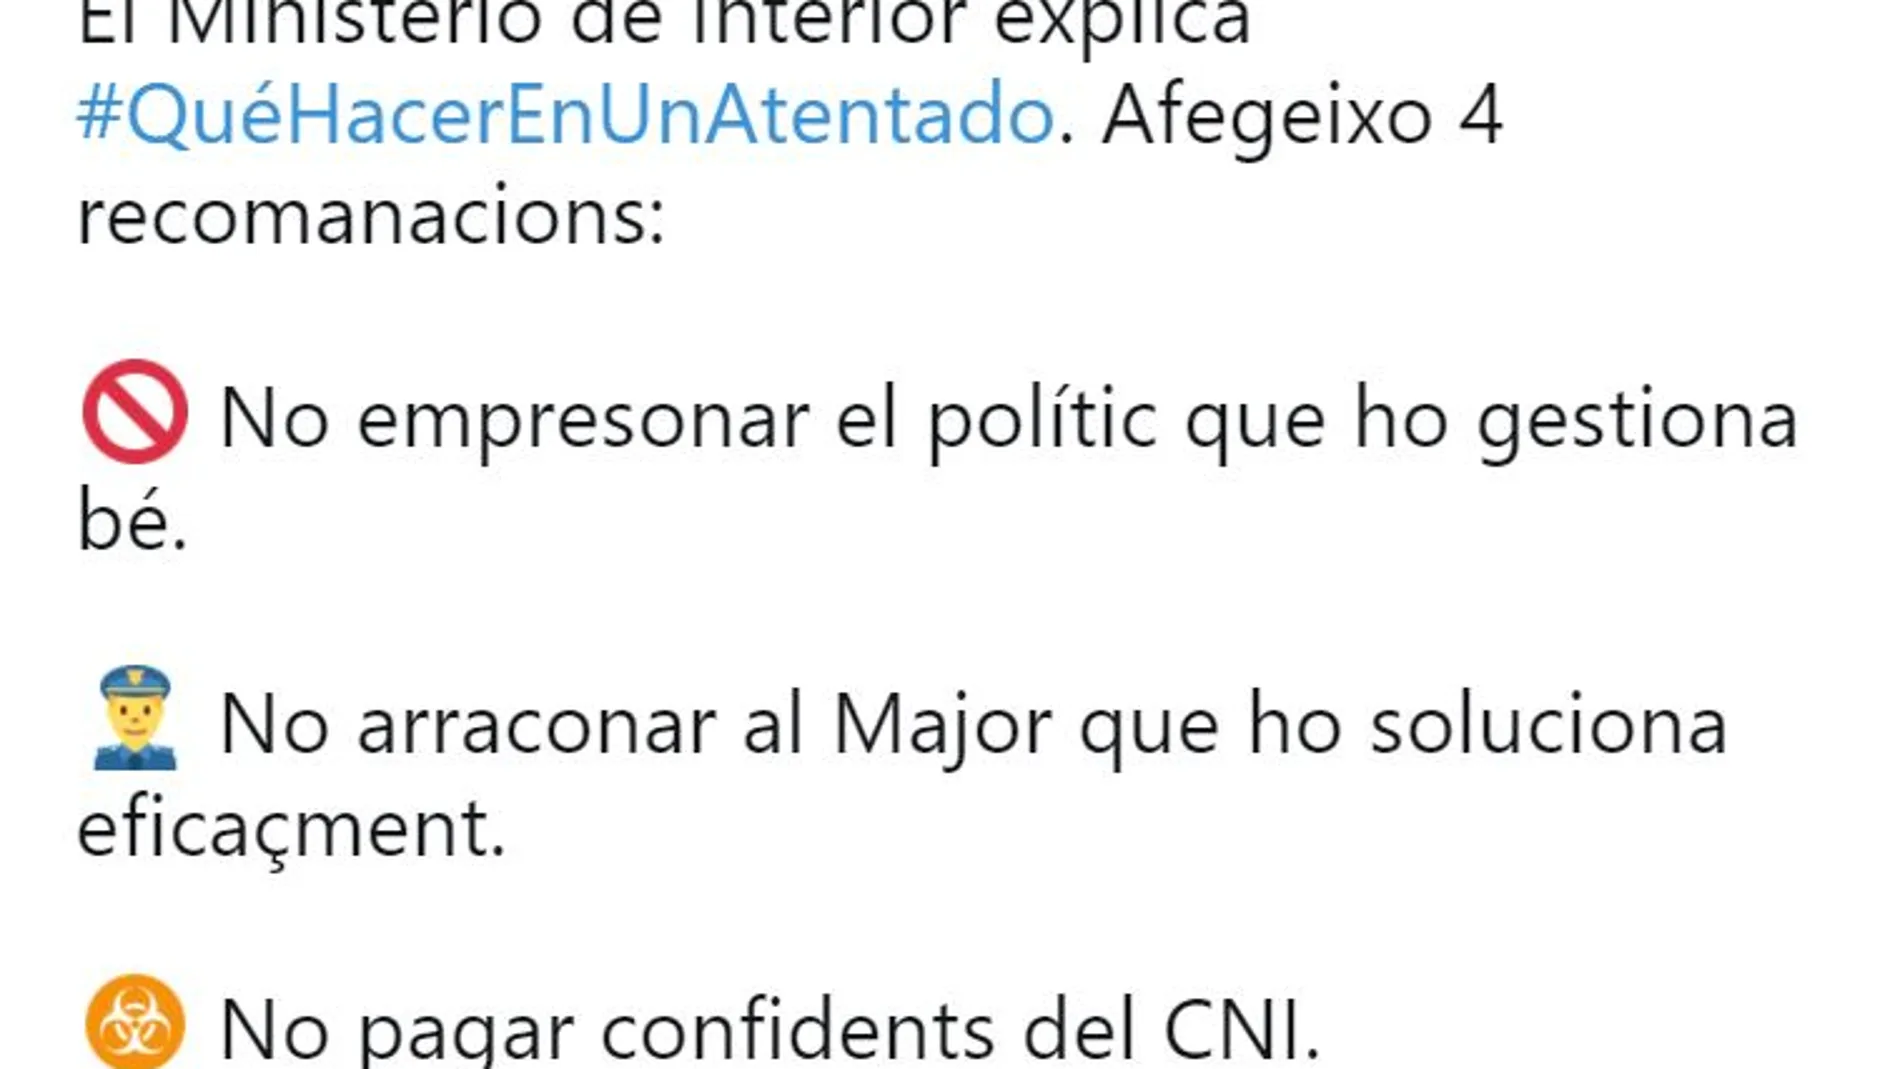 La indignante respuesta de Puigdemont a las recomendaciones sobre qué hacer en un atentado